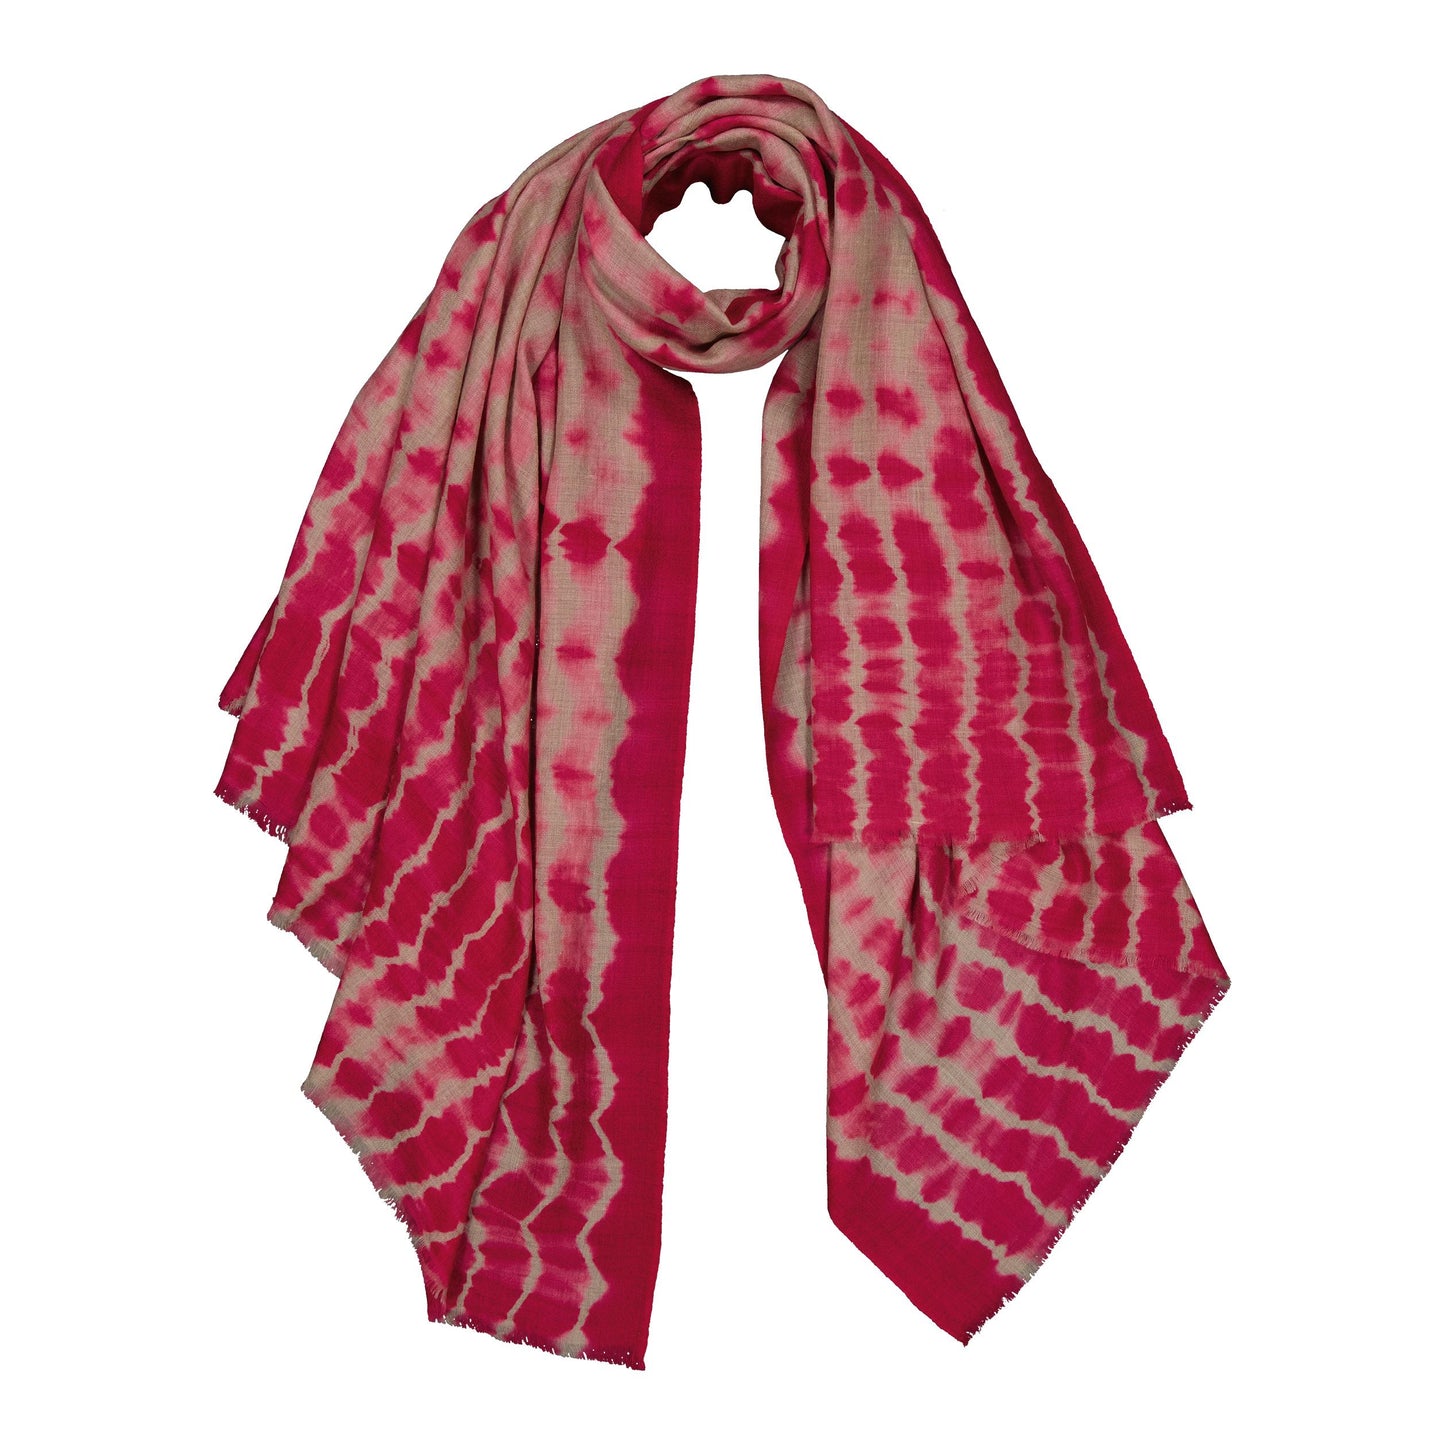 RIVE - shibori cashmere shawl NEON PINK